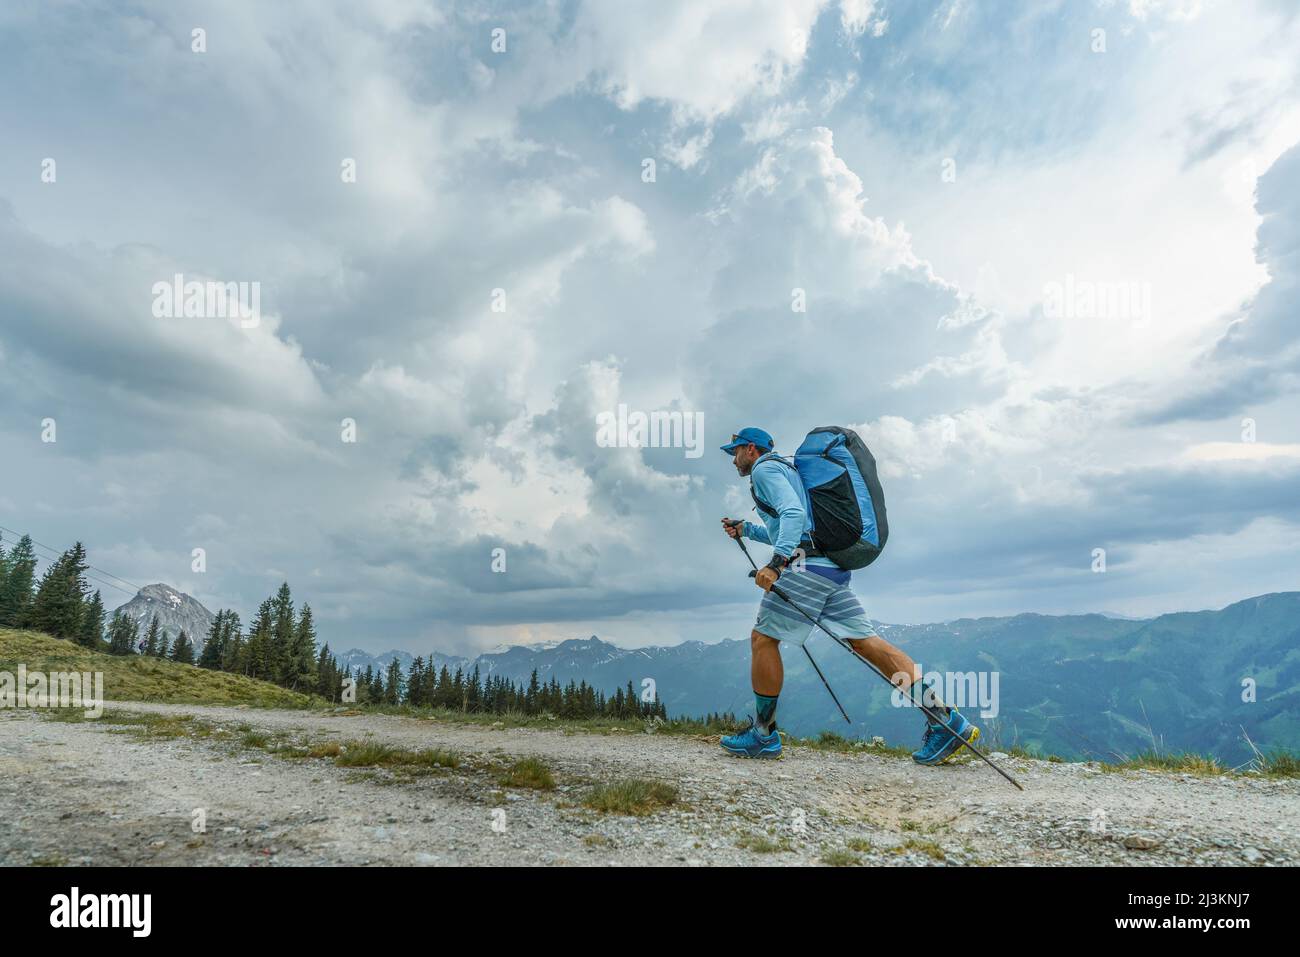 Ein Athlet in den Redbull X Alps, ein Gleitschirmrennen, wandert mit Entschlossenheit entlang des Bergweges zu einem Gipfel, um seinen Gleitschirm unter ... Stockfoto